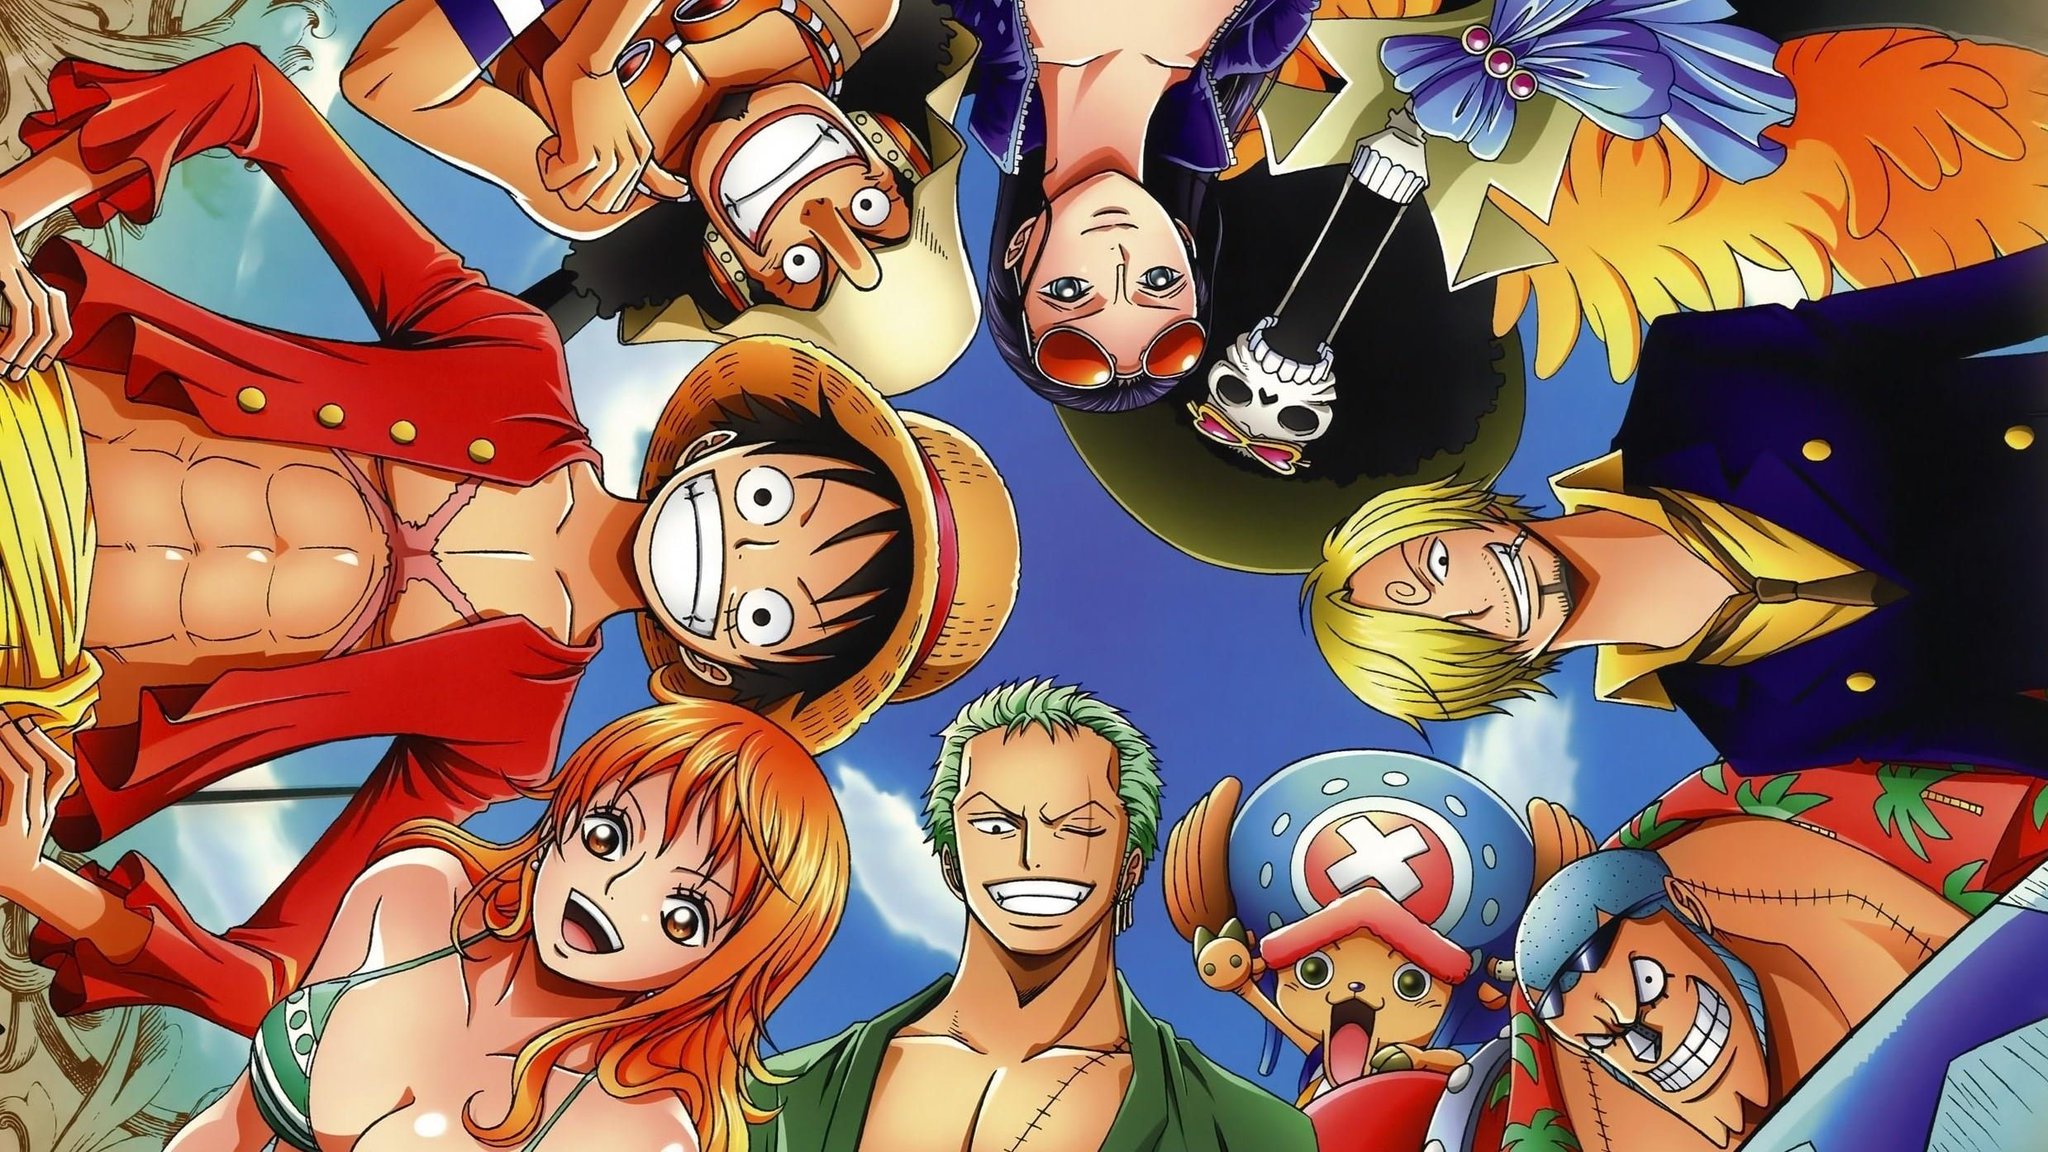 Yato on X: 🚨 Especiais e filmes de One Piece chegaram na @PrimeVideoBR. One  Piece: Heart of Gold One Piece: Episode of East Blue One Piece: 3D2Y One  Piece: Adventure of Nebulandia